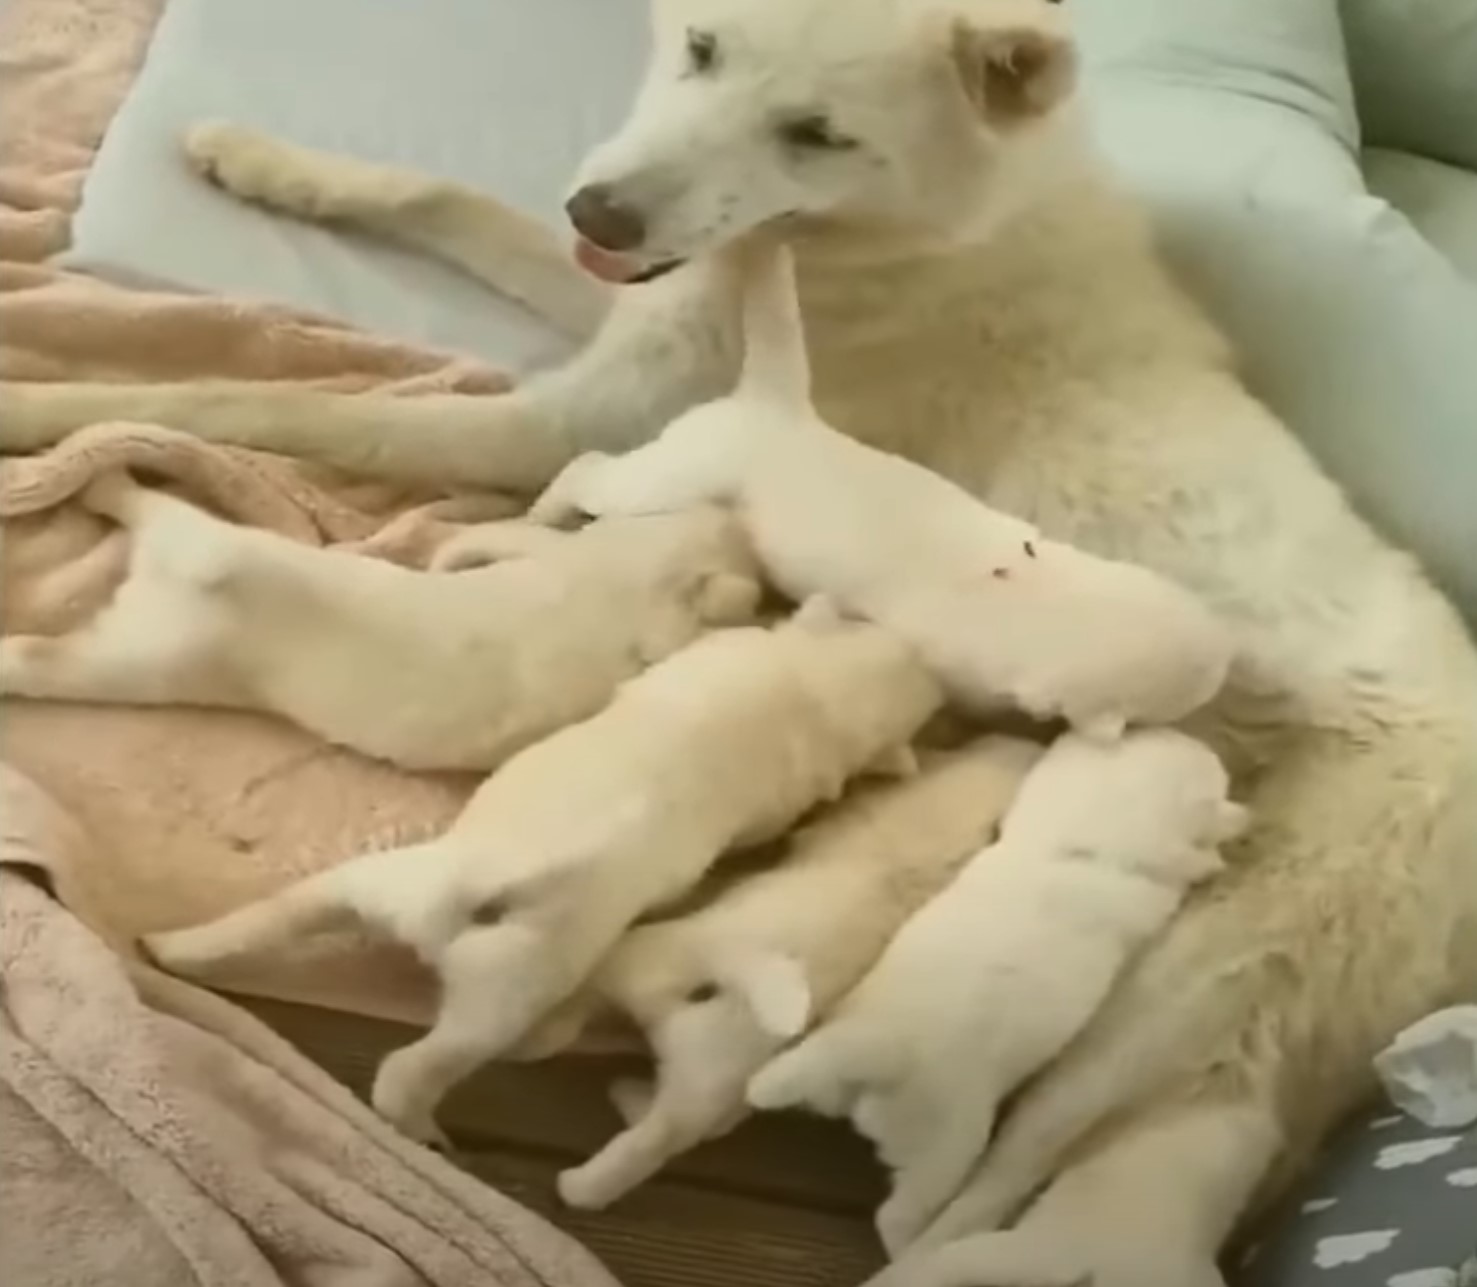 dog nursing her puppies